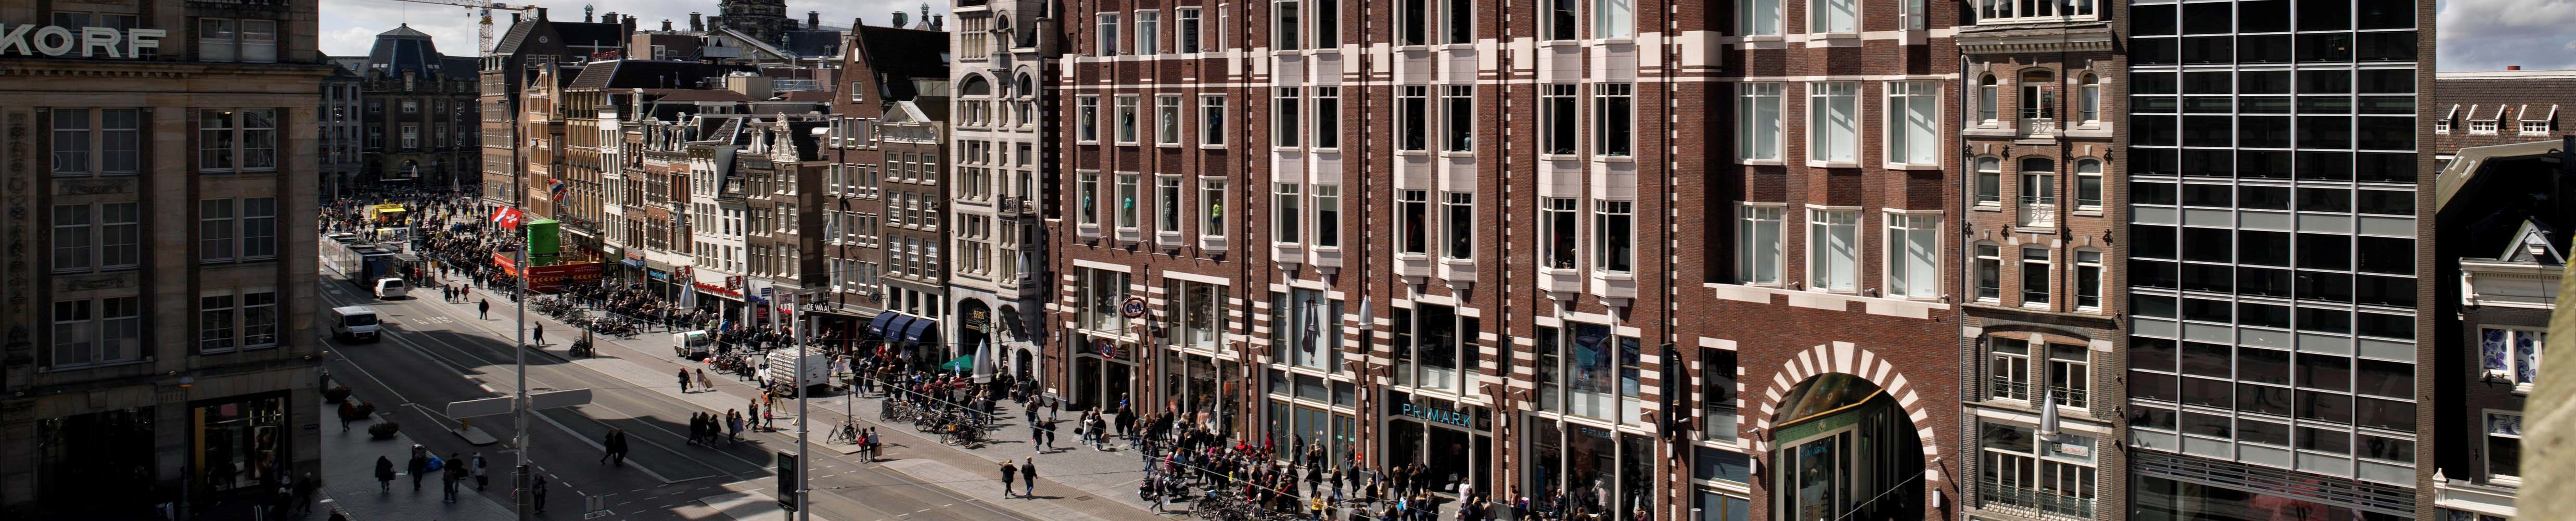 Retail Amsterdam Damrak 70 3